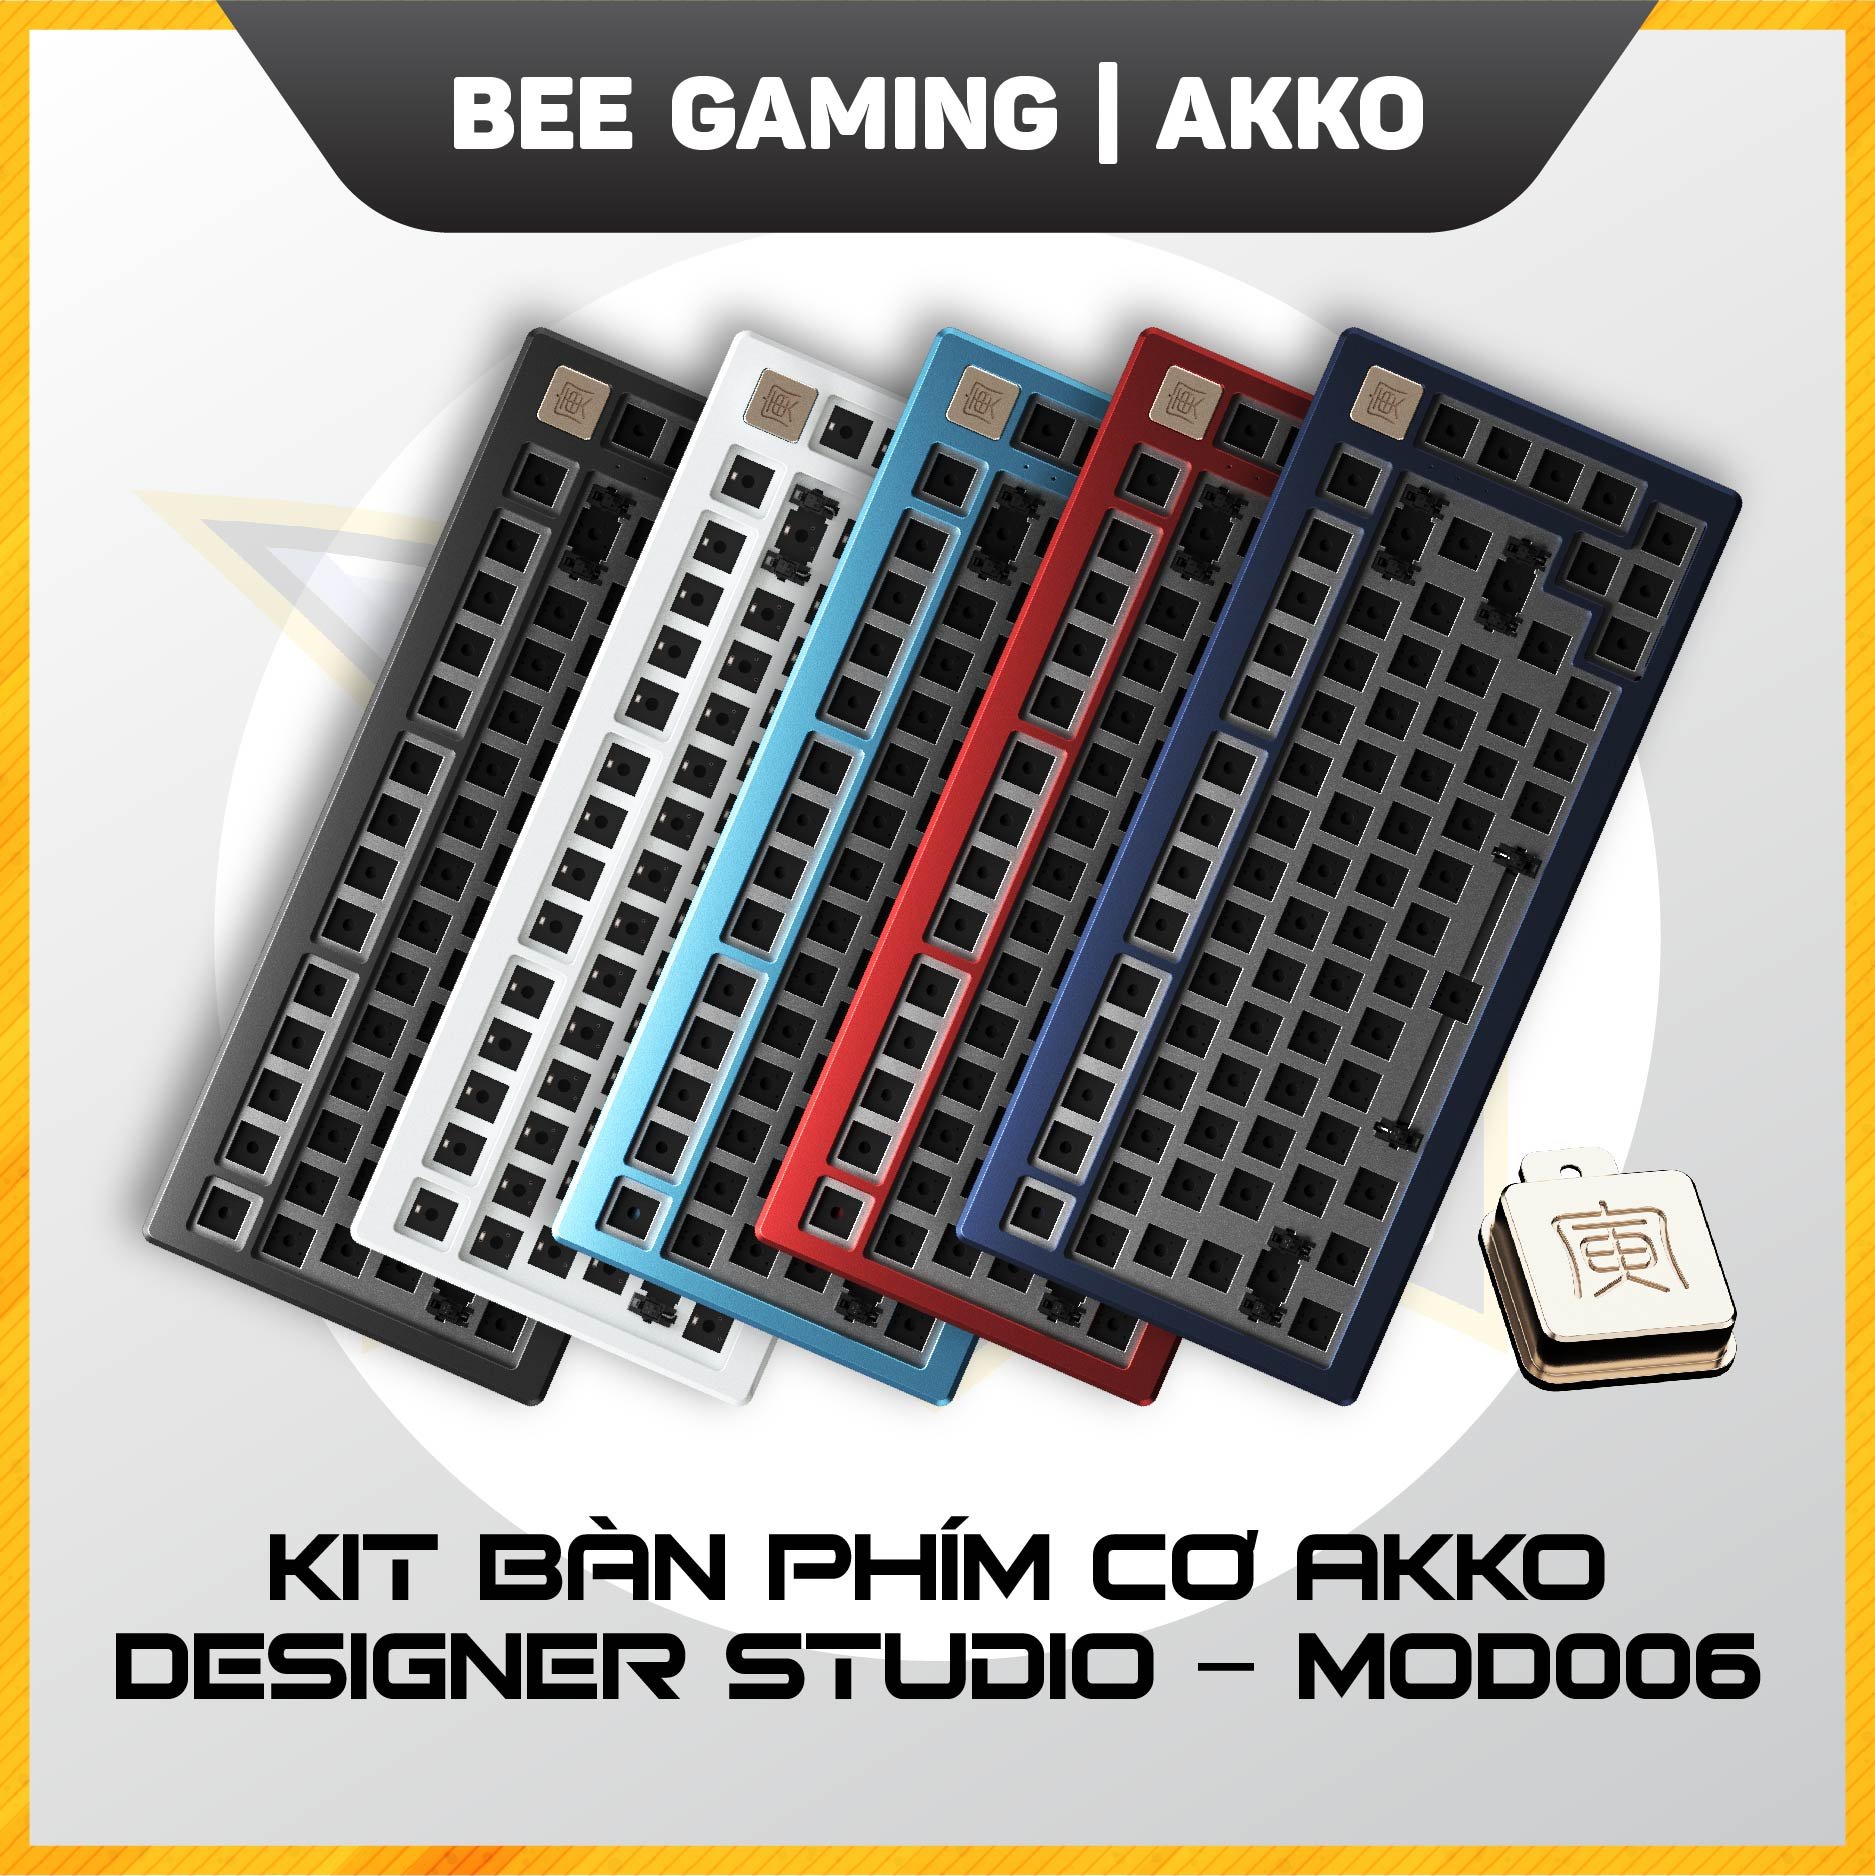 kit-ban-phim-co-akko-designer-studio-mod006-beegaming-1